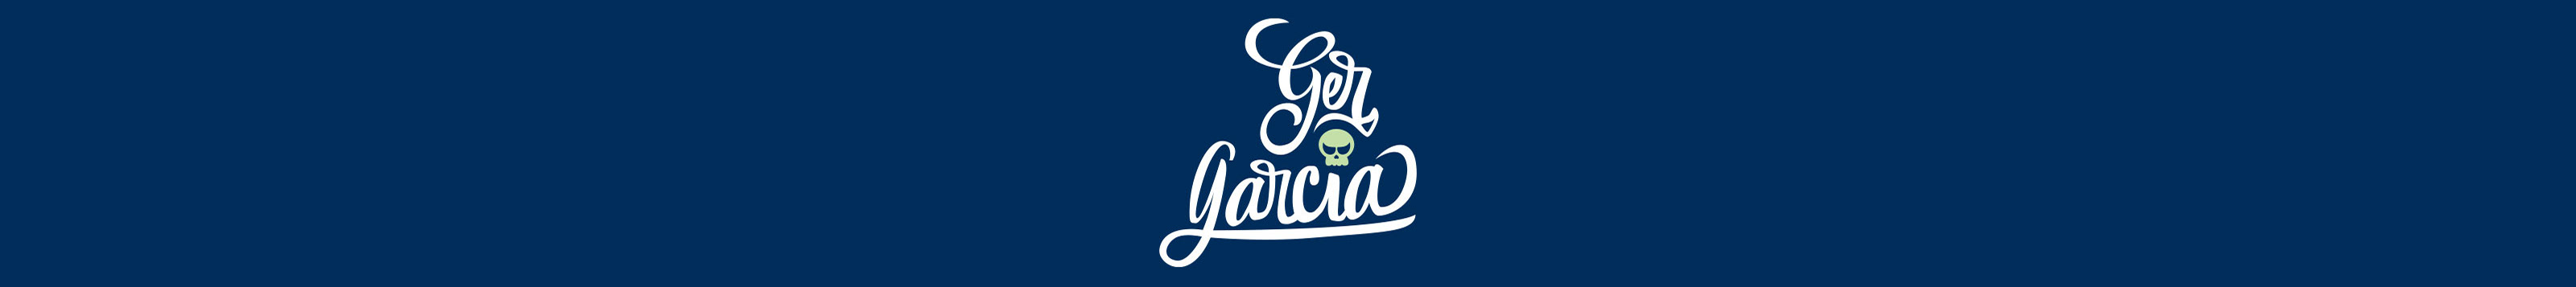 Banner profilu uživatele Ger Garcia